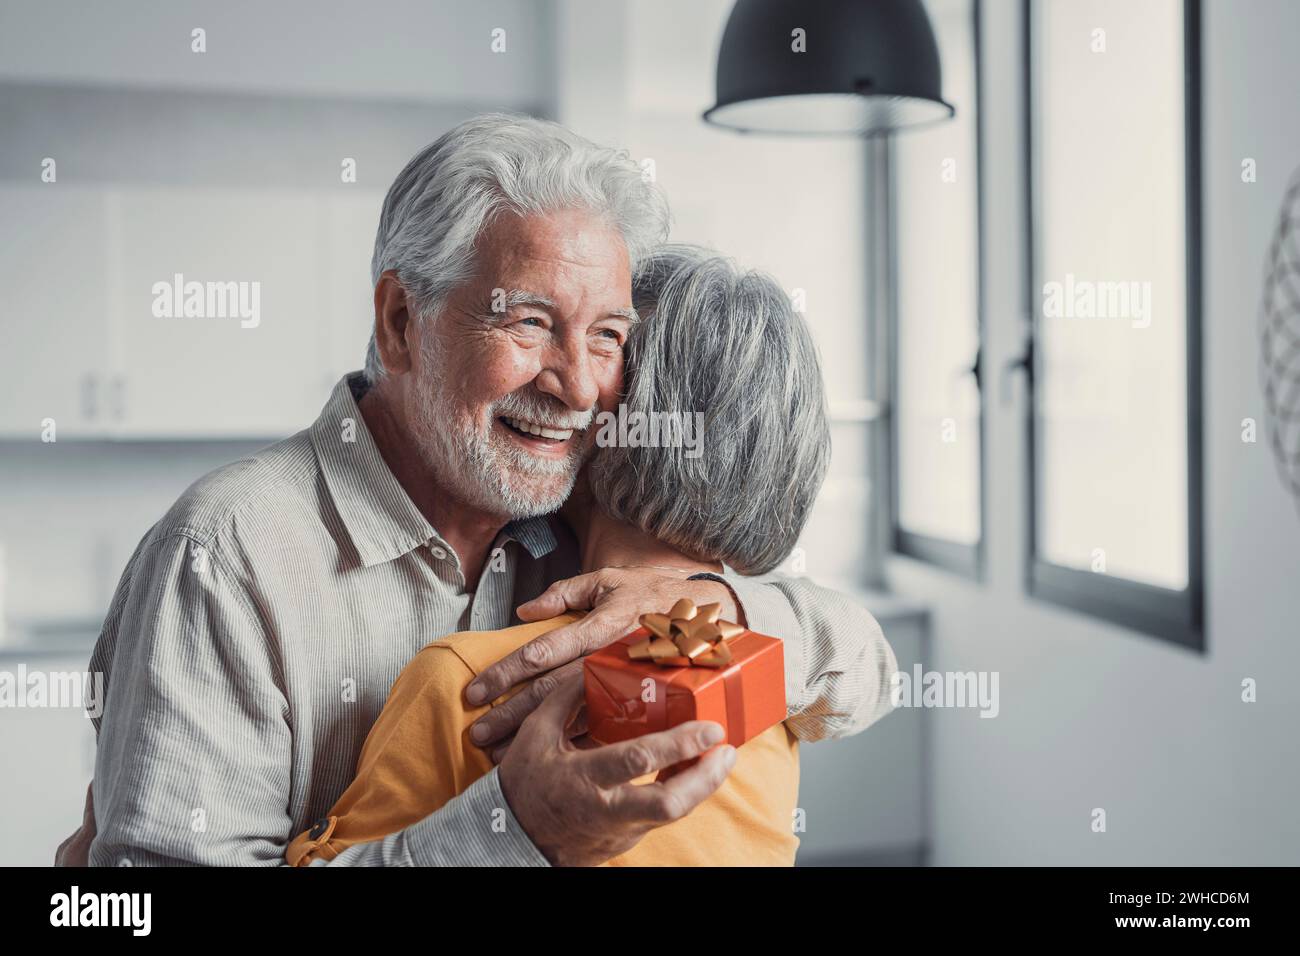 Una donna anziana sorridente che regala una confezione regalo al vecchio marito sorridente degli anni '80, congratulandosi con il compleanno o l'anniversario del matrimonio. Un uomo anziano gioioso che si sente entusiasta di ricevere un regalo dalla moglie Foto Stock